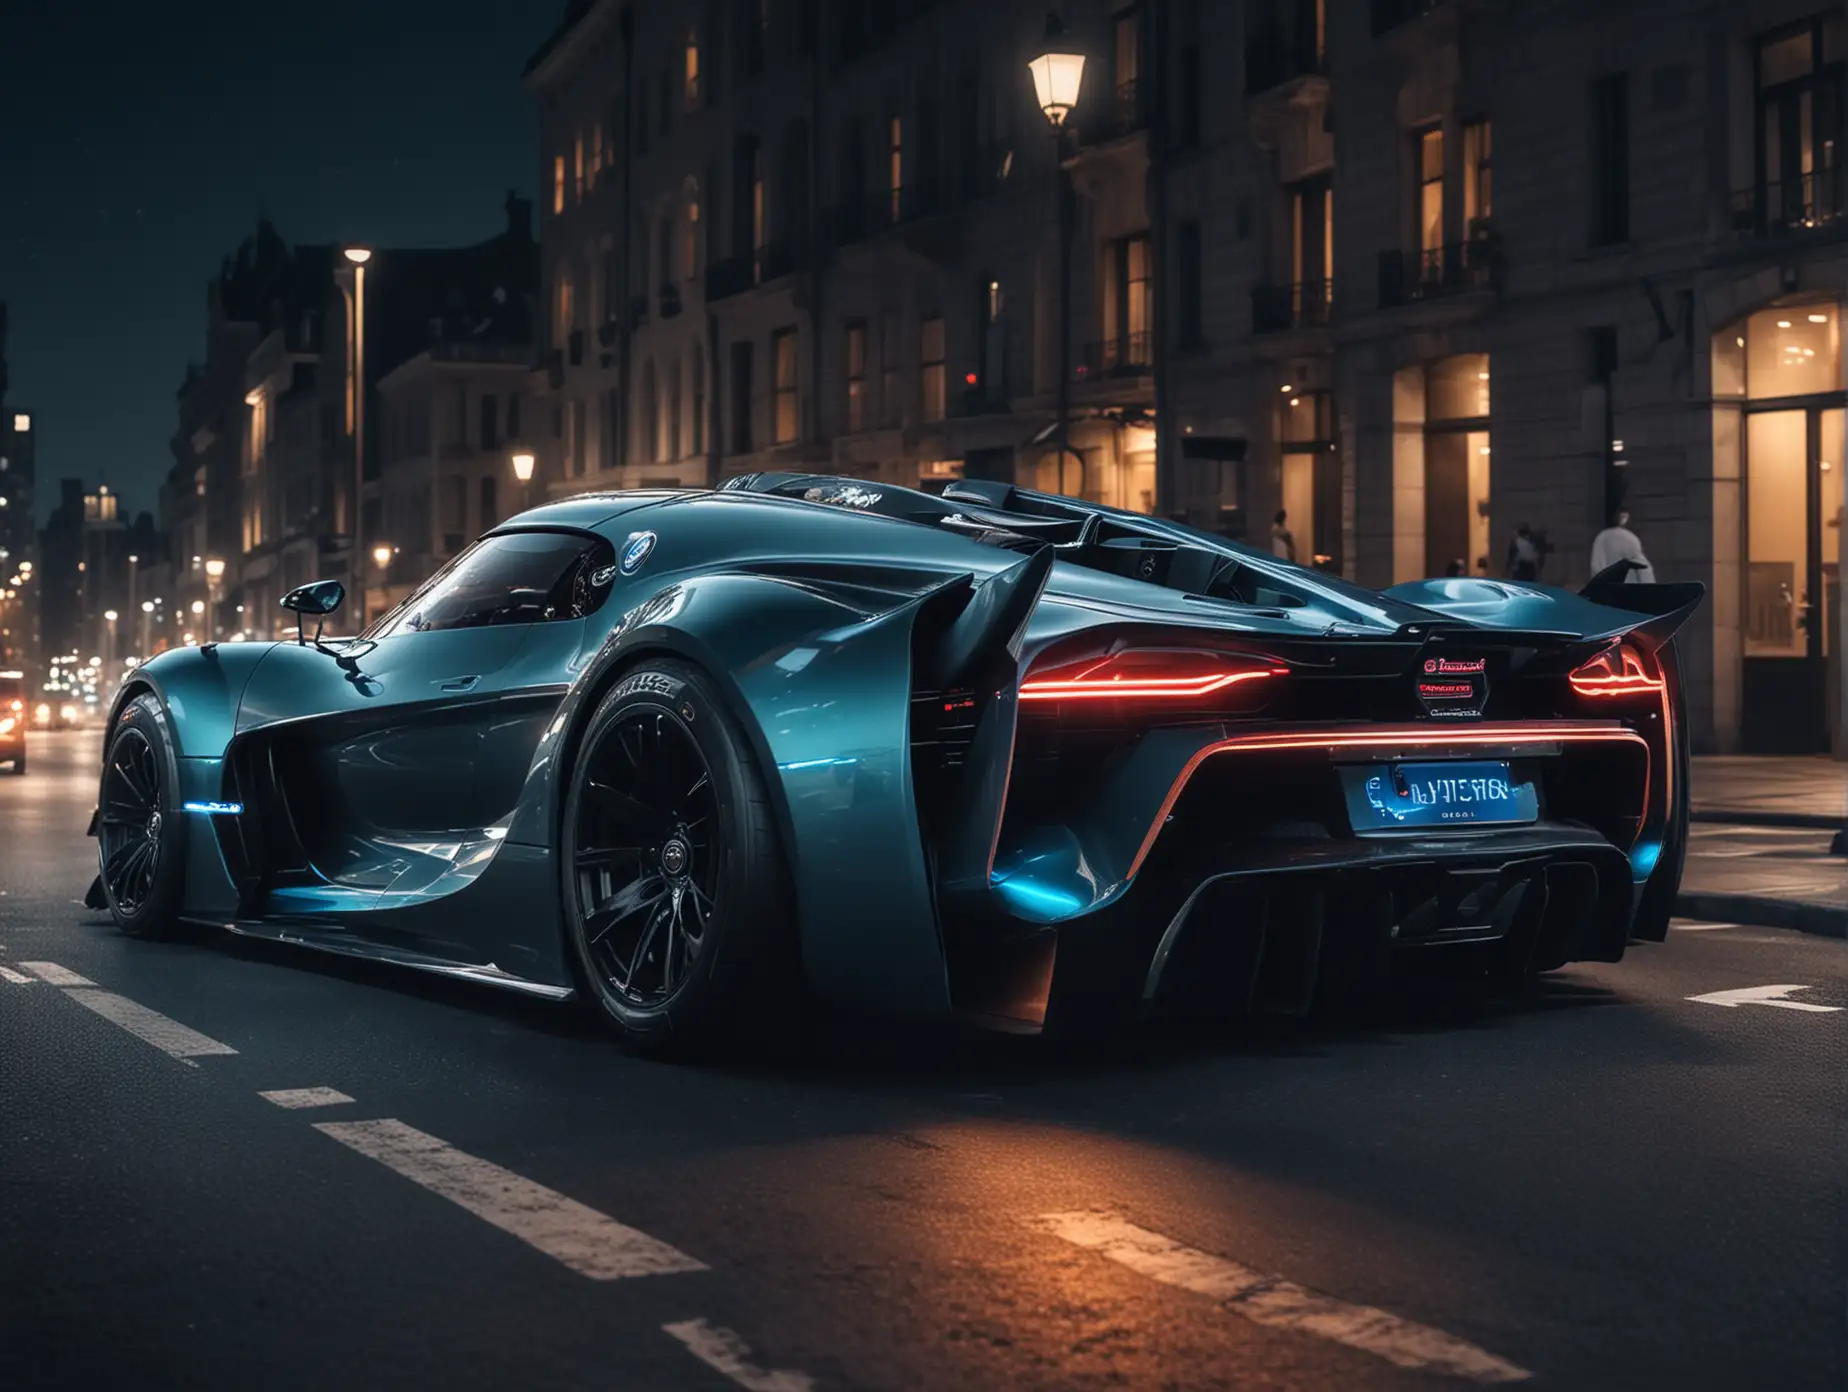 Futuristic-Bugatti-Bolide-Supercars-Night-Drive-in-Dark-Cityscape